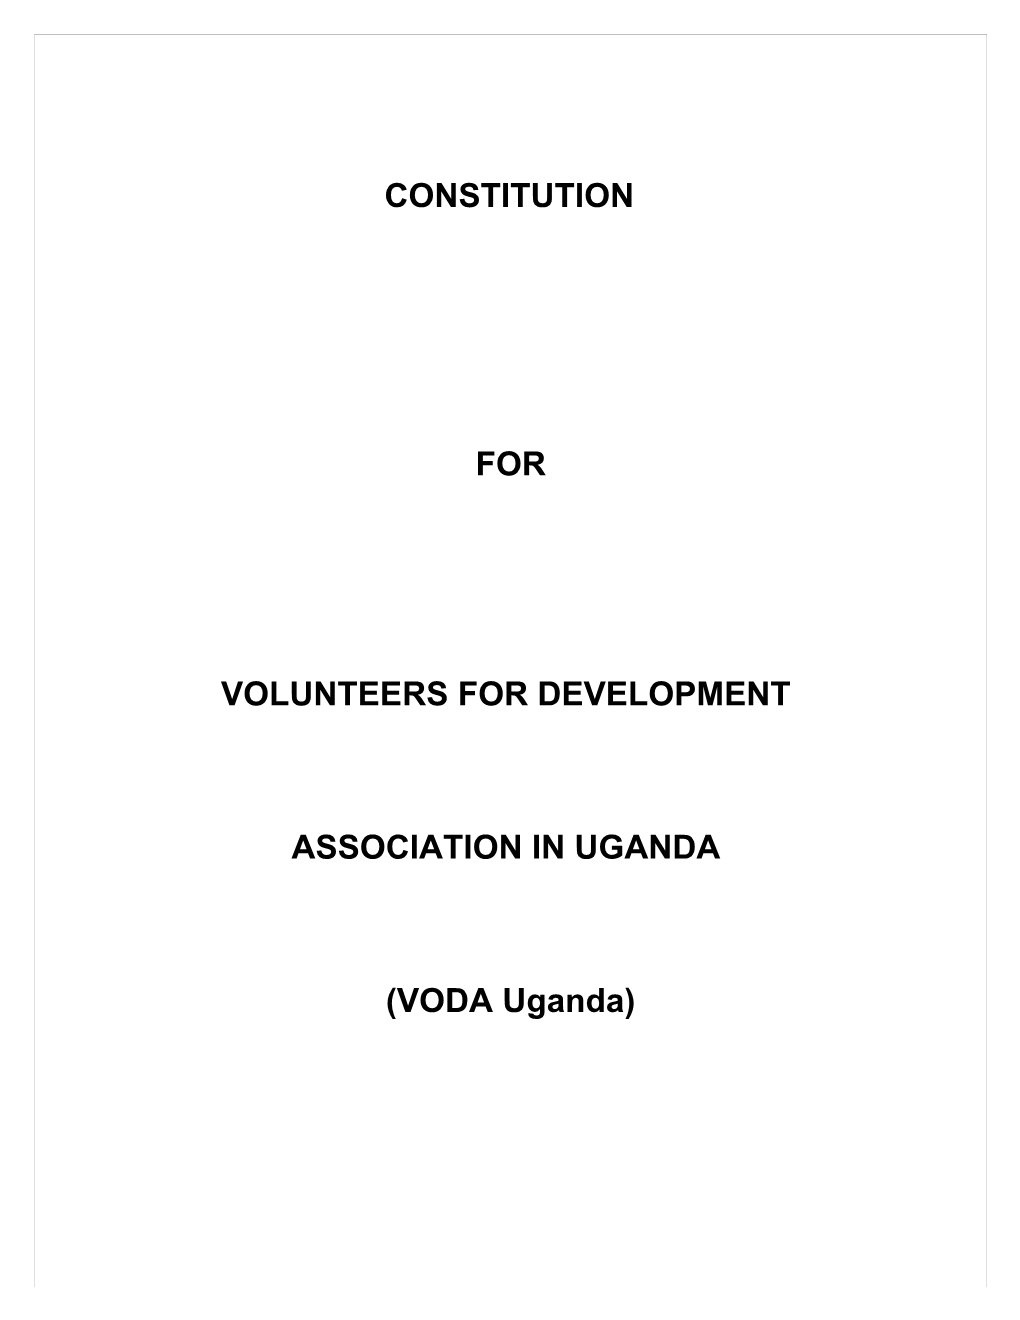 Volunteers for Development